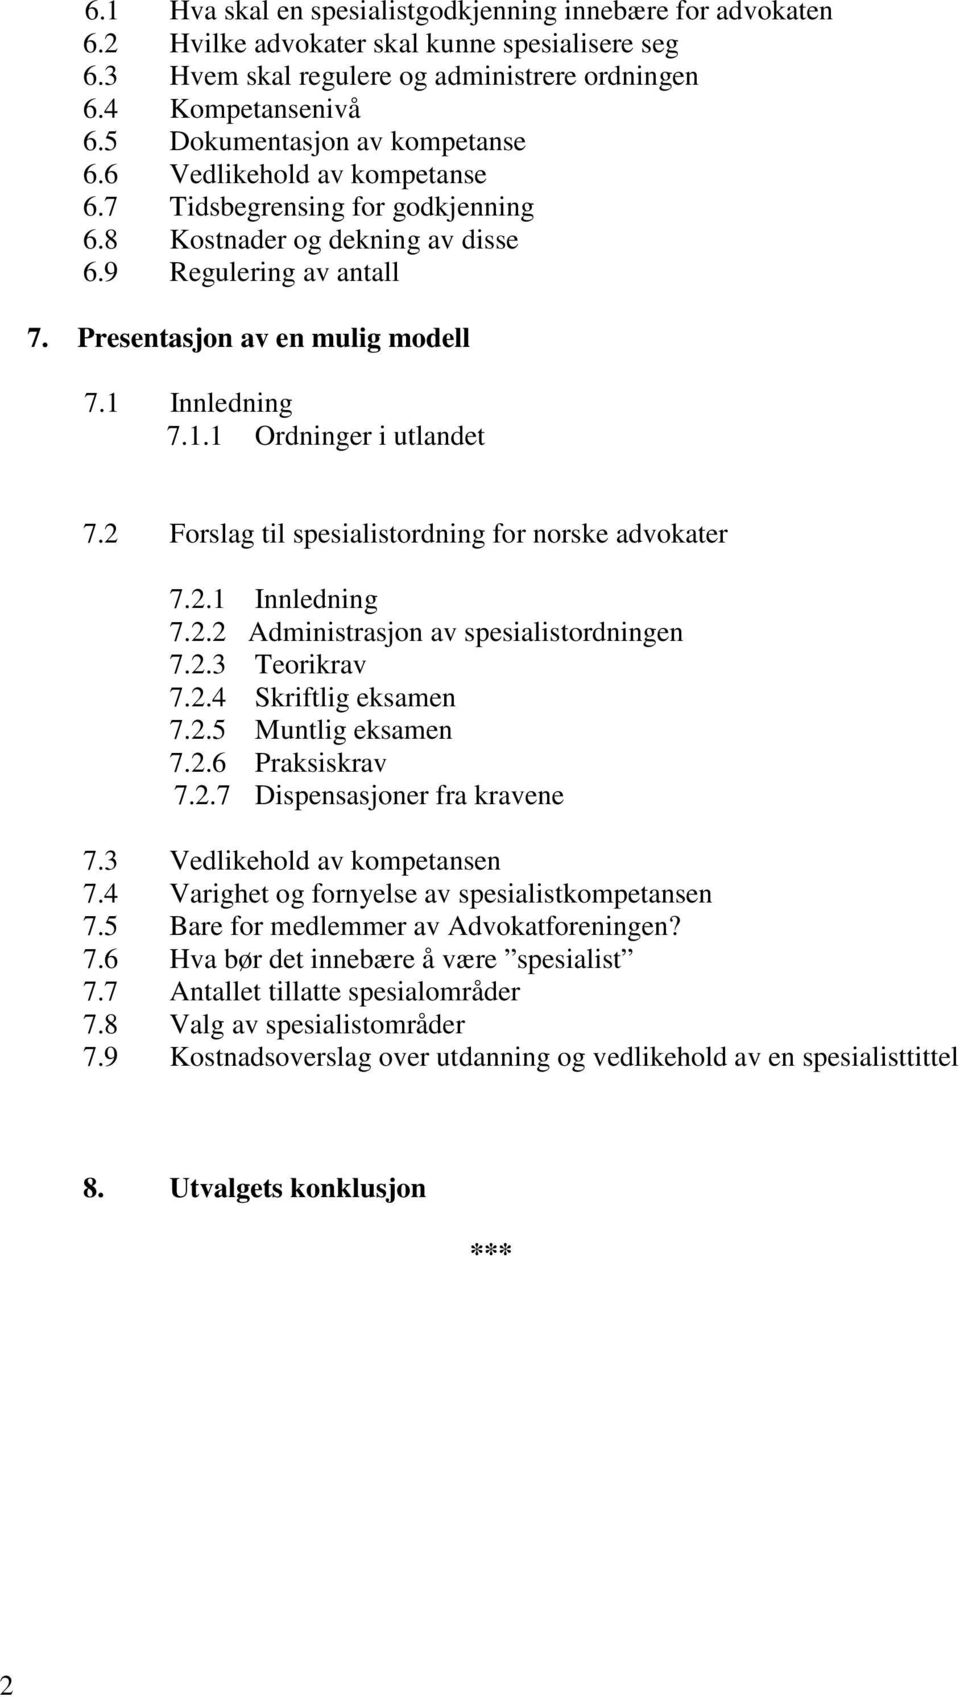 1 Innledning 7.1.1 Ordninger i utlandet 7.2 Forslag til spesialistordning for norske advokater 7.2.1 Innledning 7.2.2 Administrasjon av spesialistordningen 7.2.3 Teorikrav 7.2.4 Skriftlig eksamen 7.2.5 Muntlig eksamen 7.